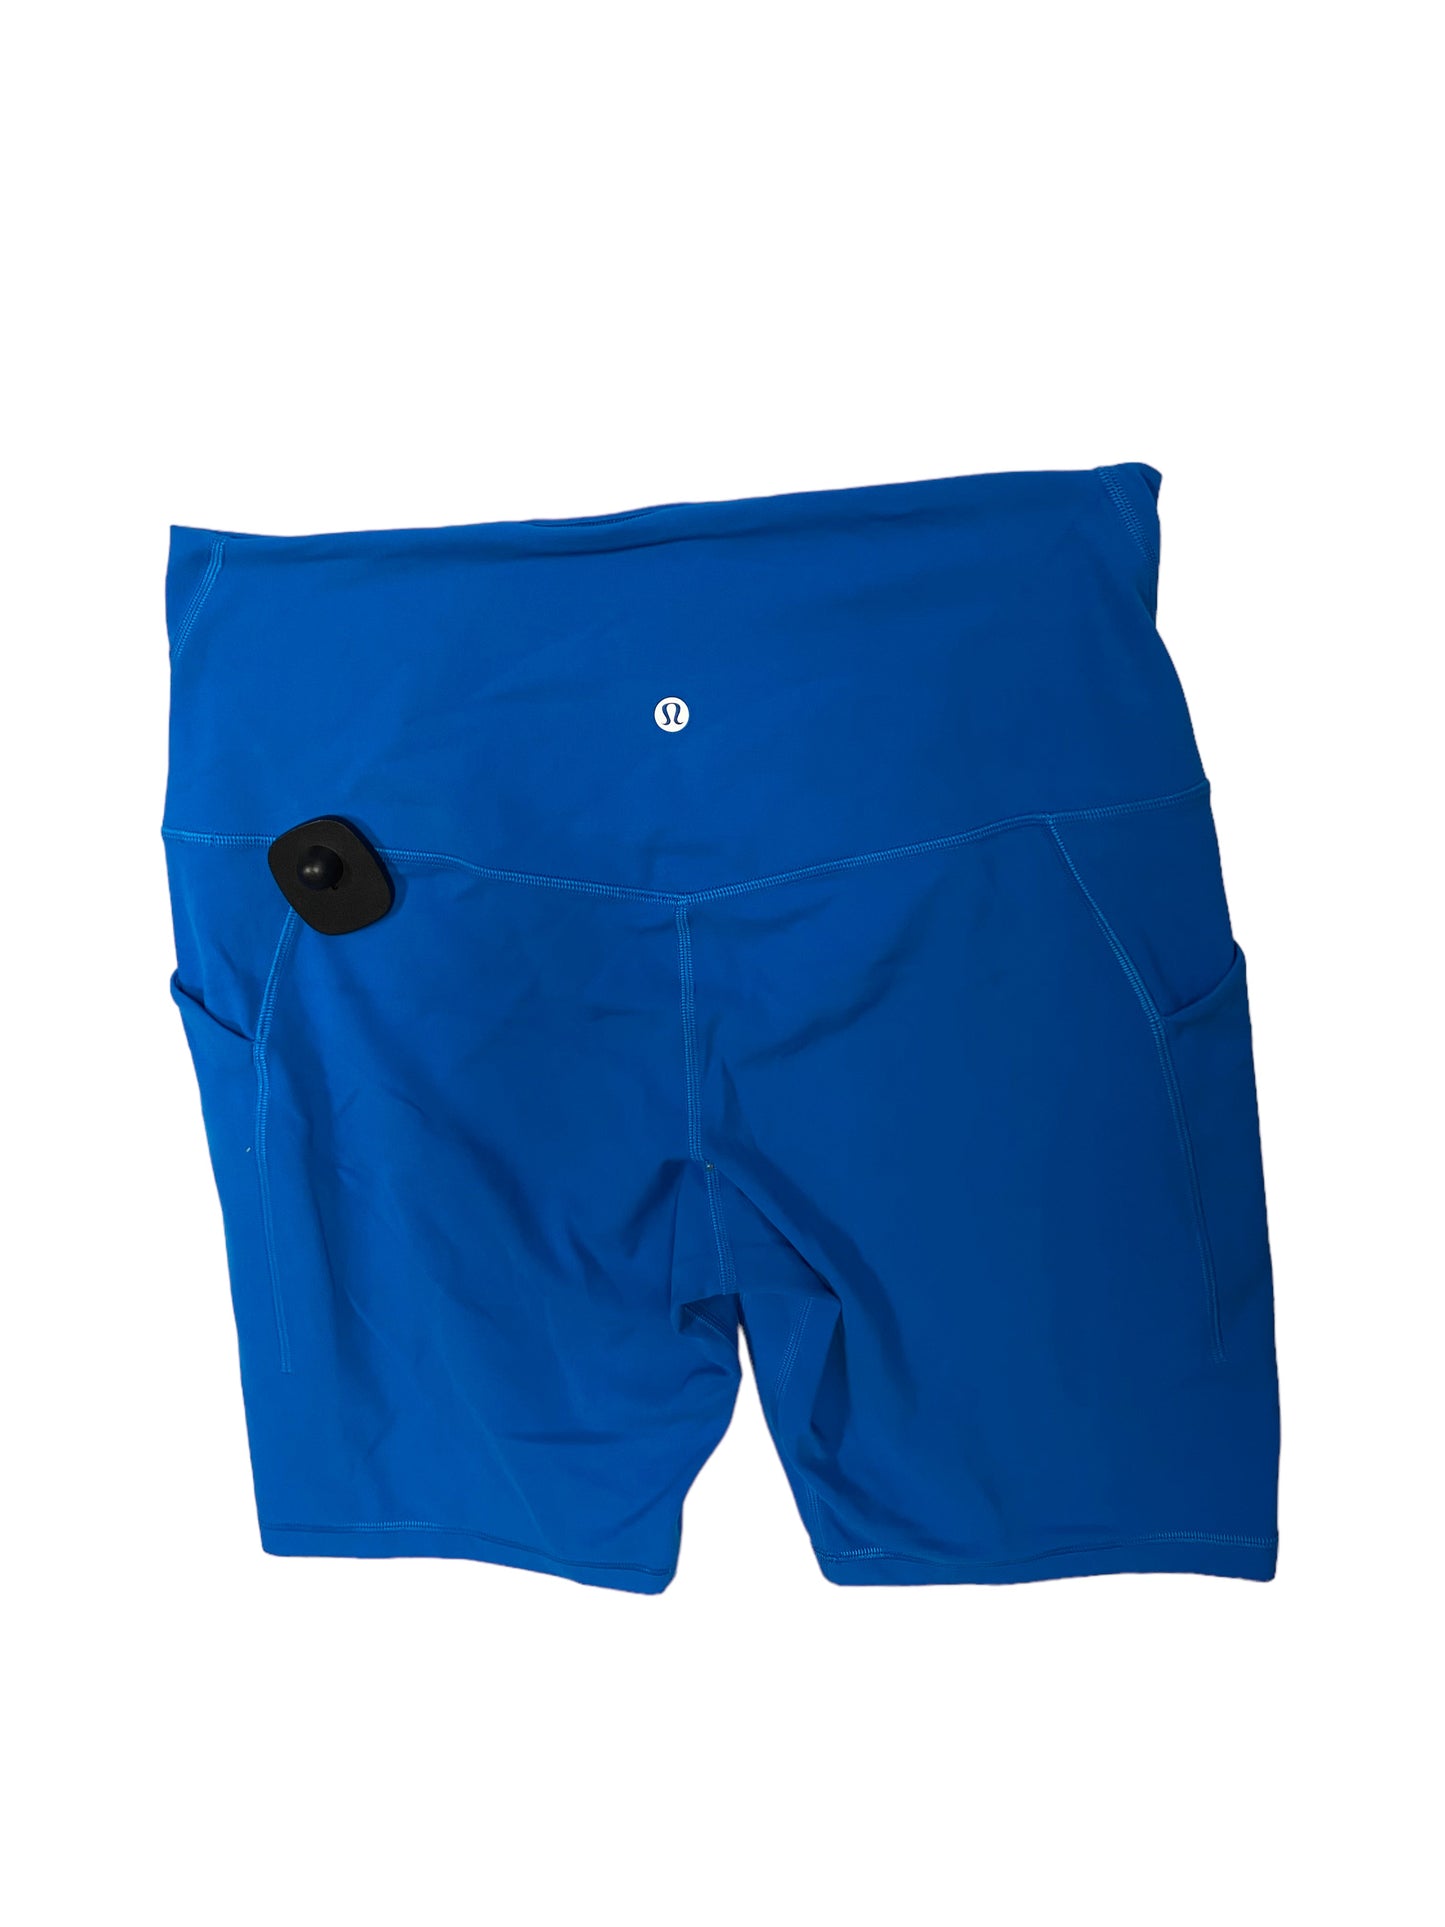 Blue Athletic Shorts Lululemon, Size 12